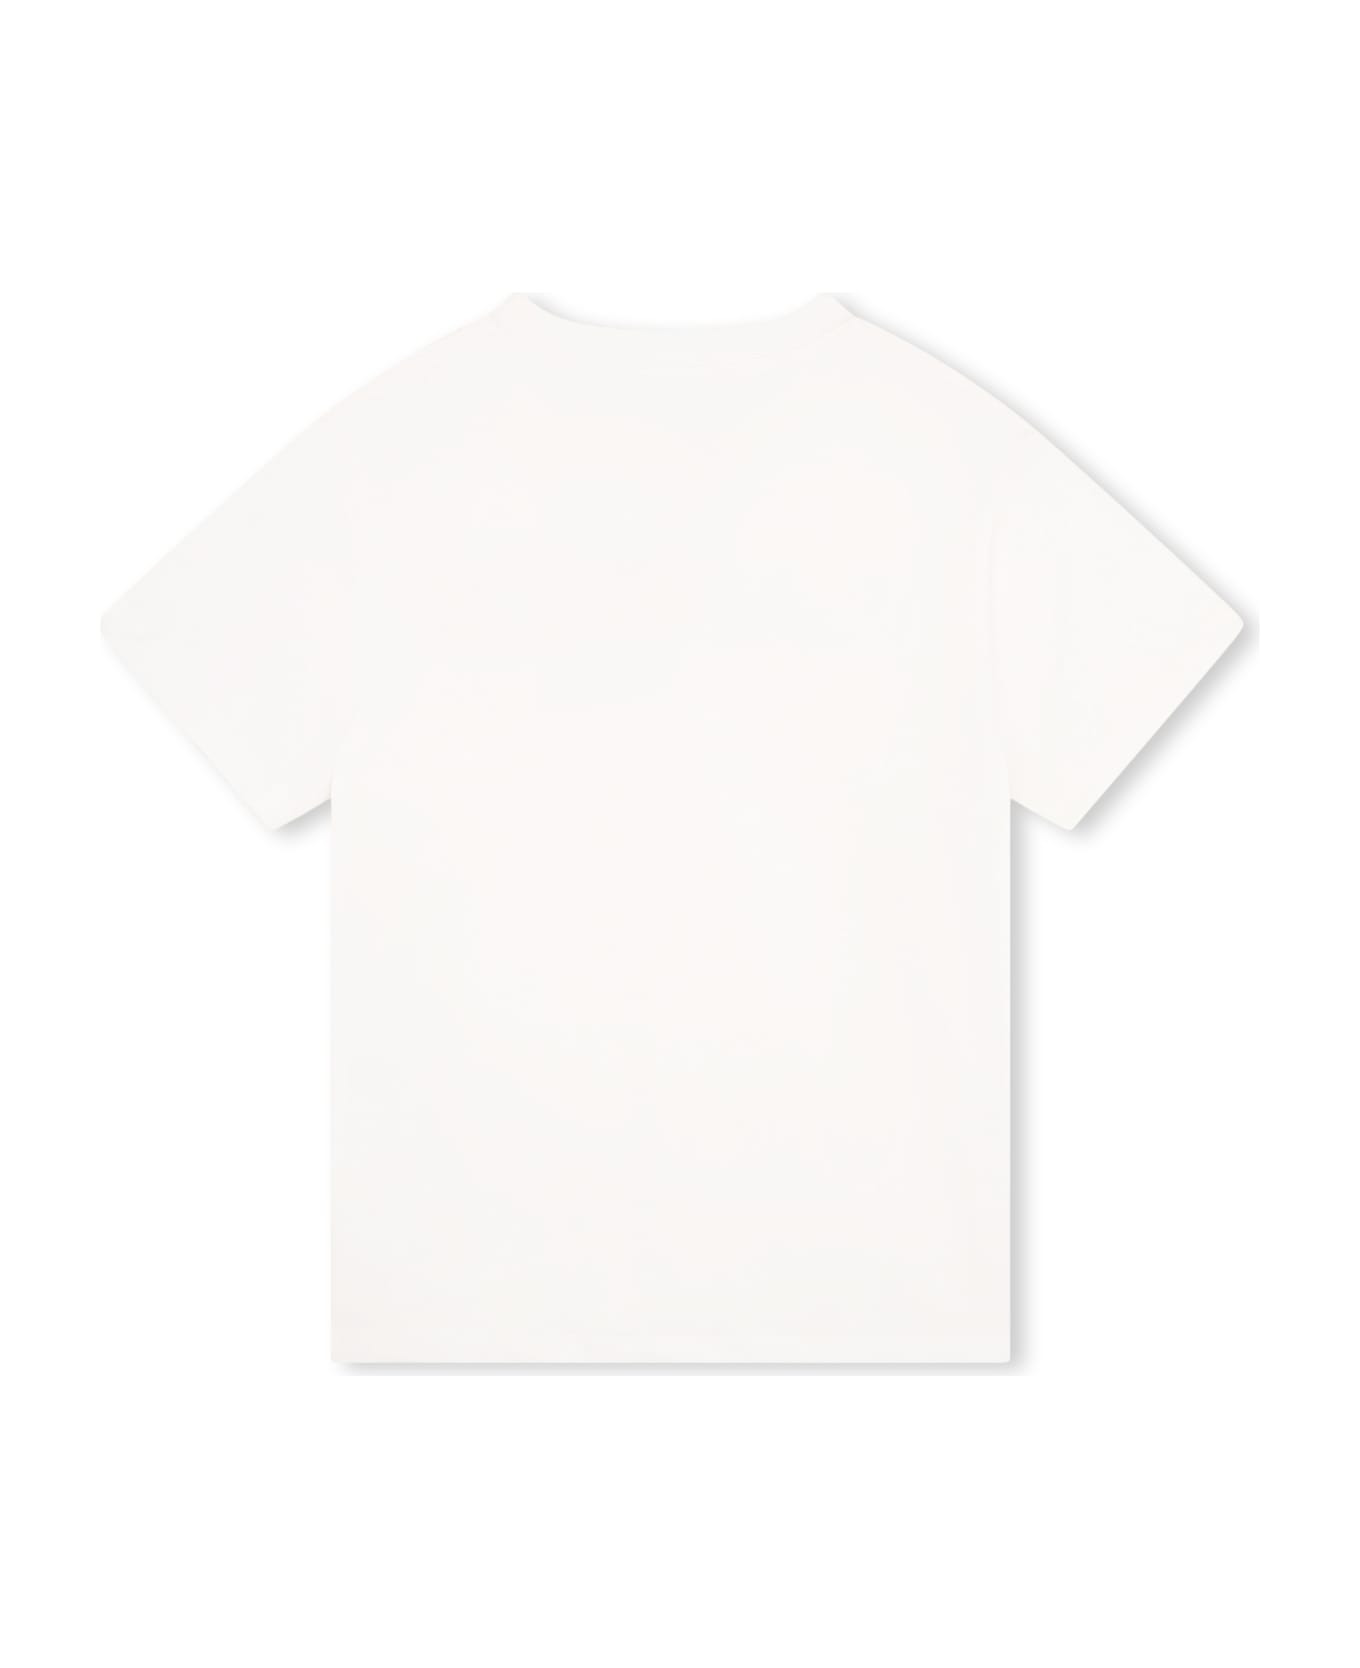 Lanvin Logo T-shirt - White